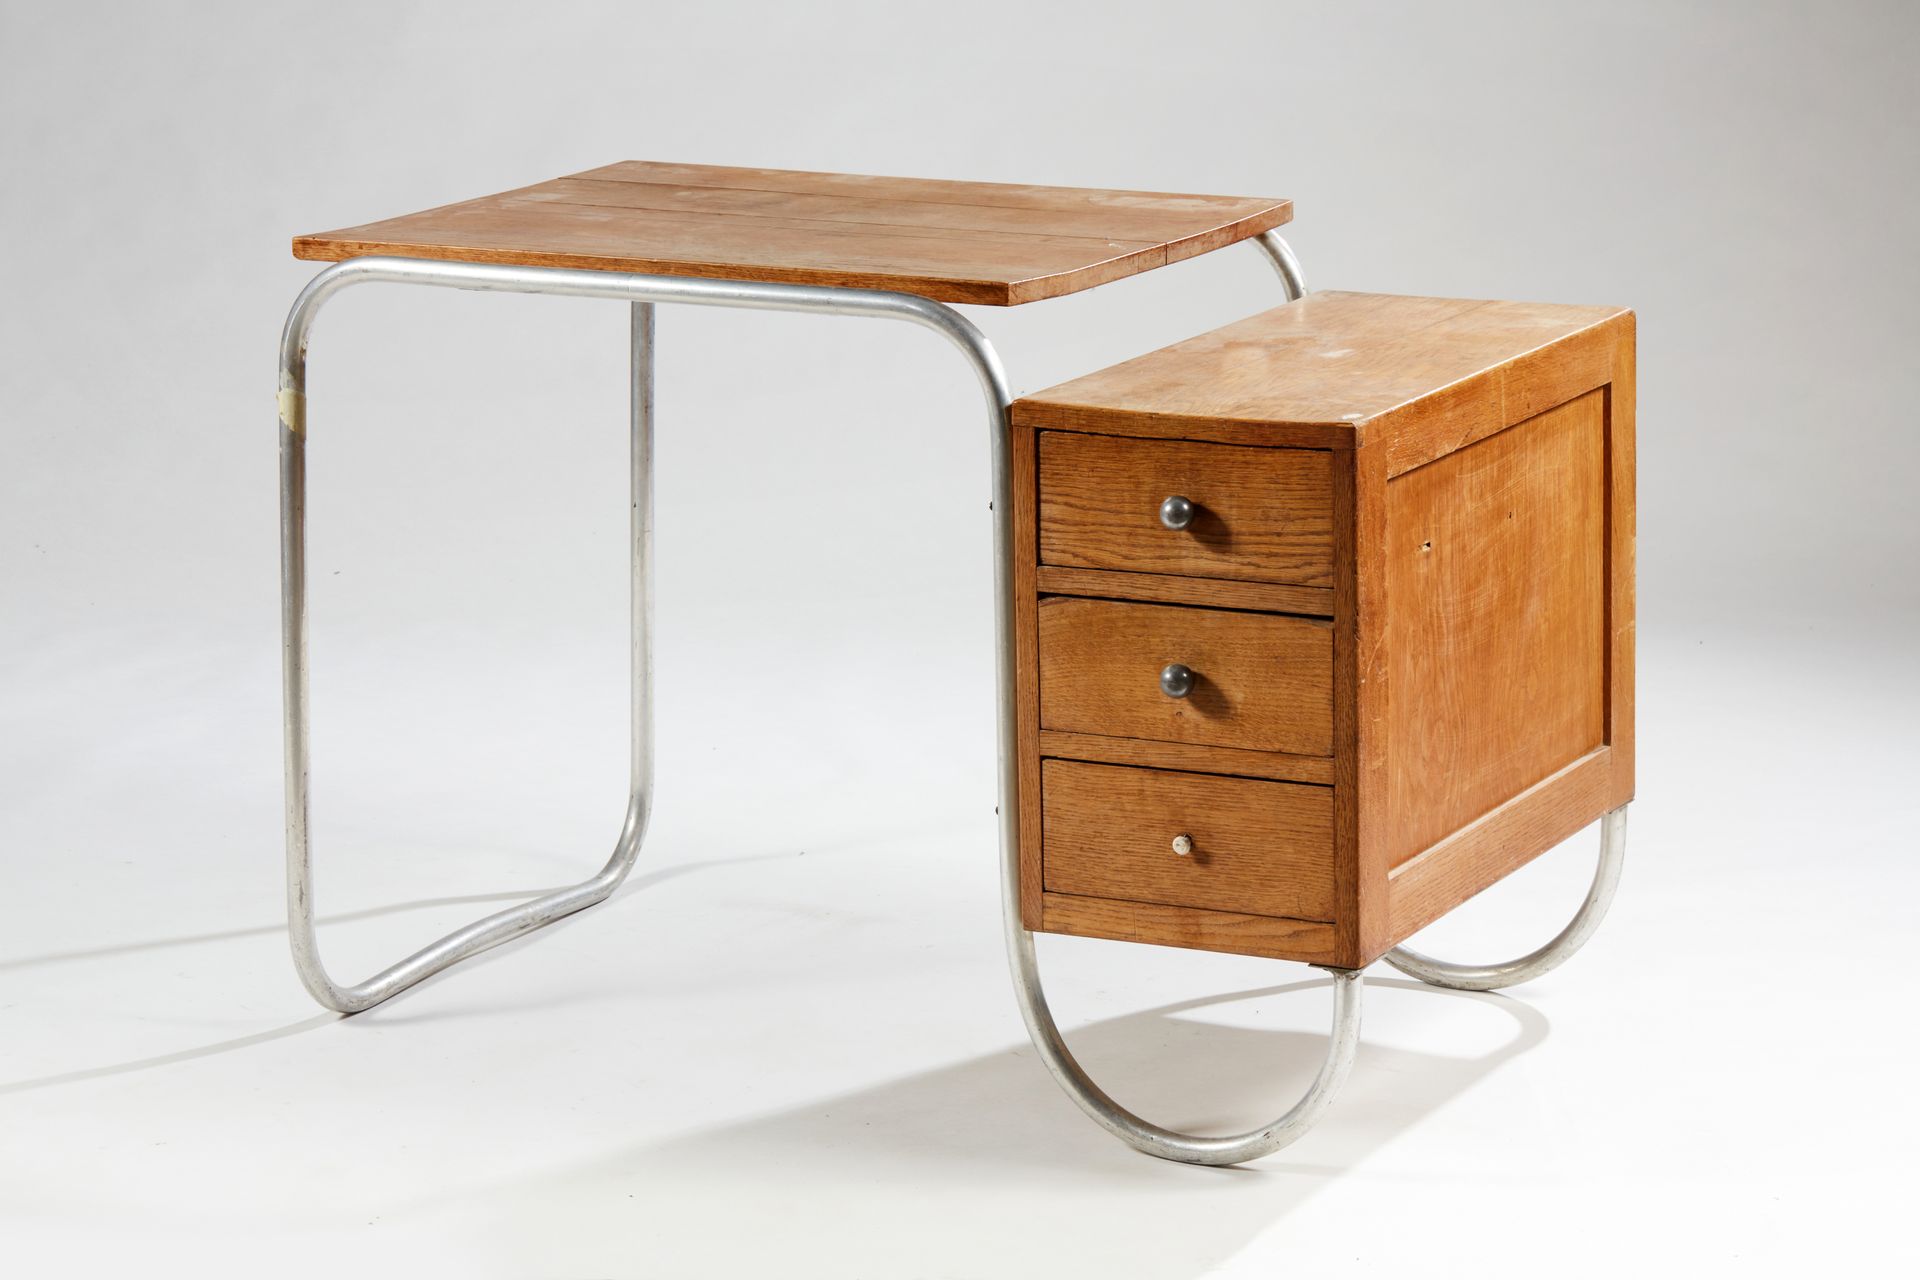 Null 现代主义风格的办公桌，管状桌腿和天然木材


75 x 107 x 66厘米


磨损，原样